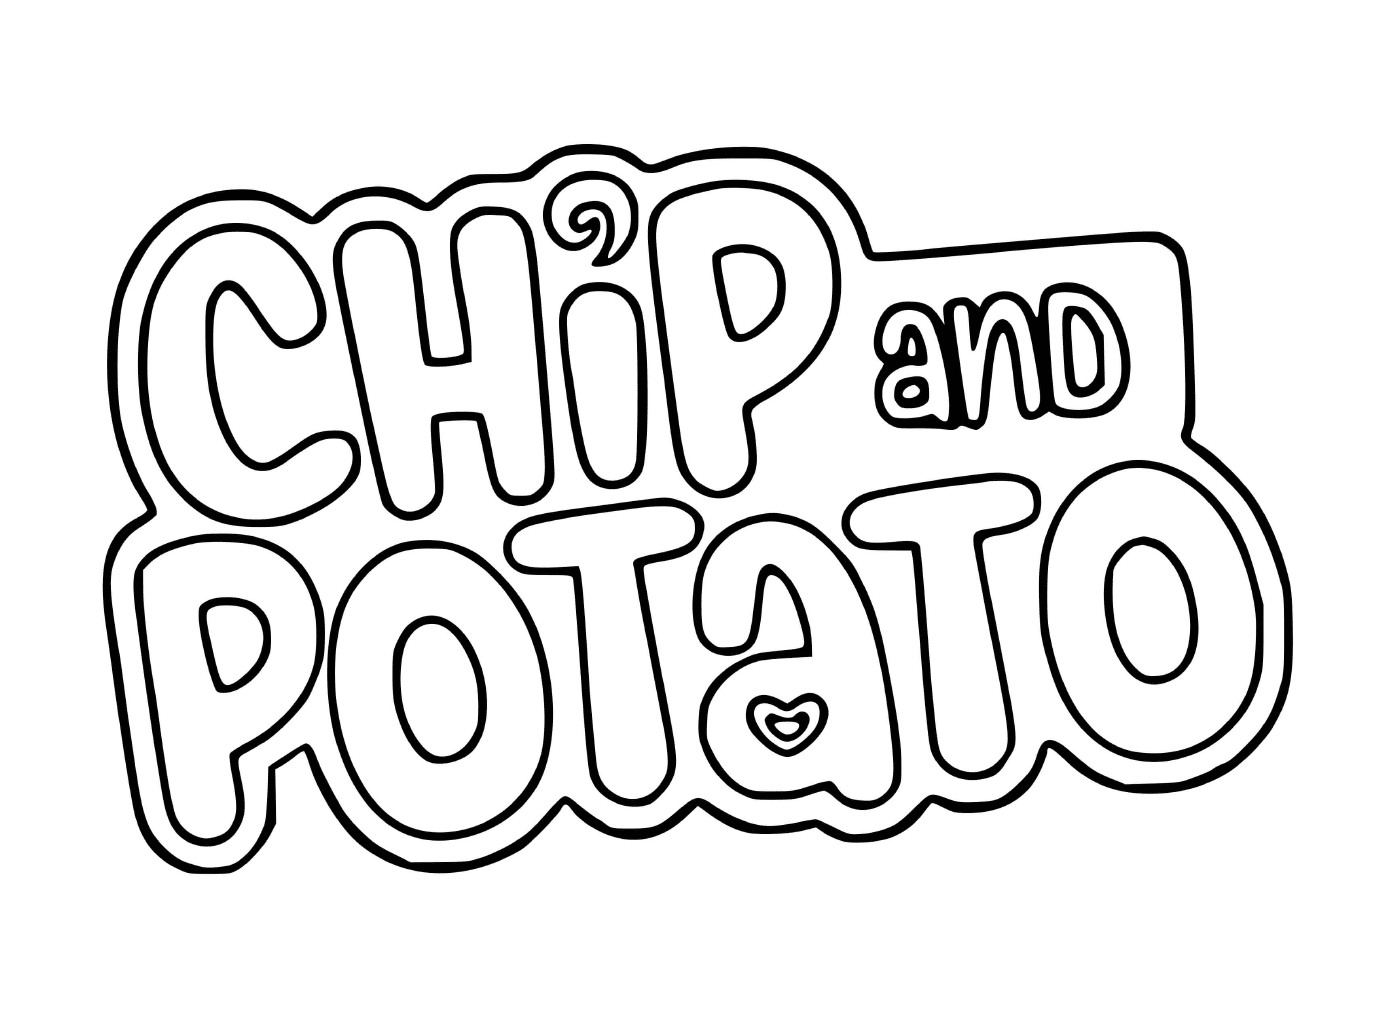  Logotipo de Chip e Batata 